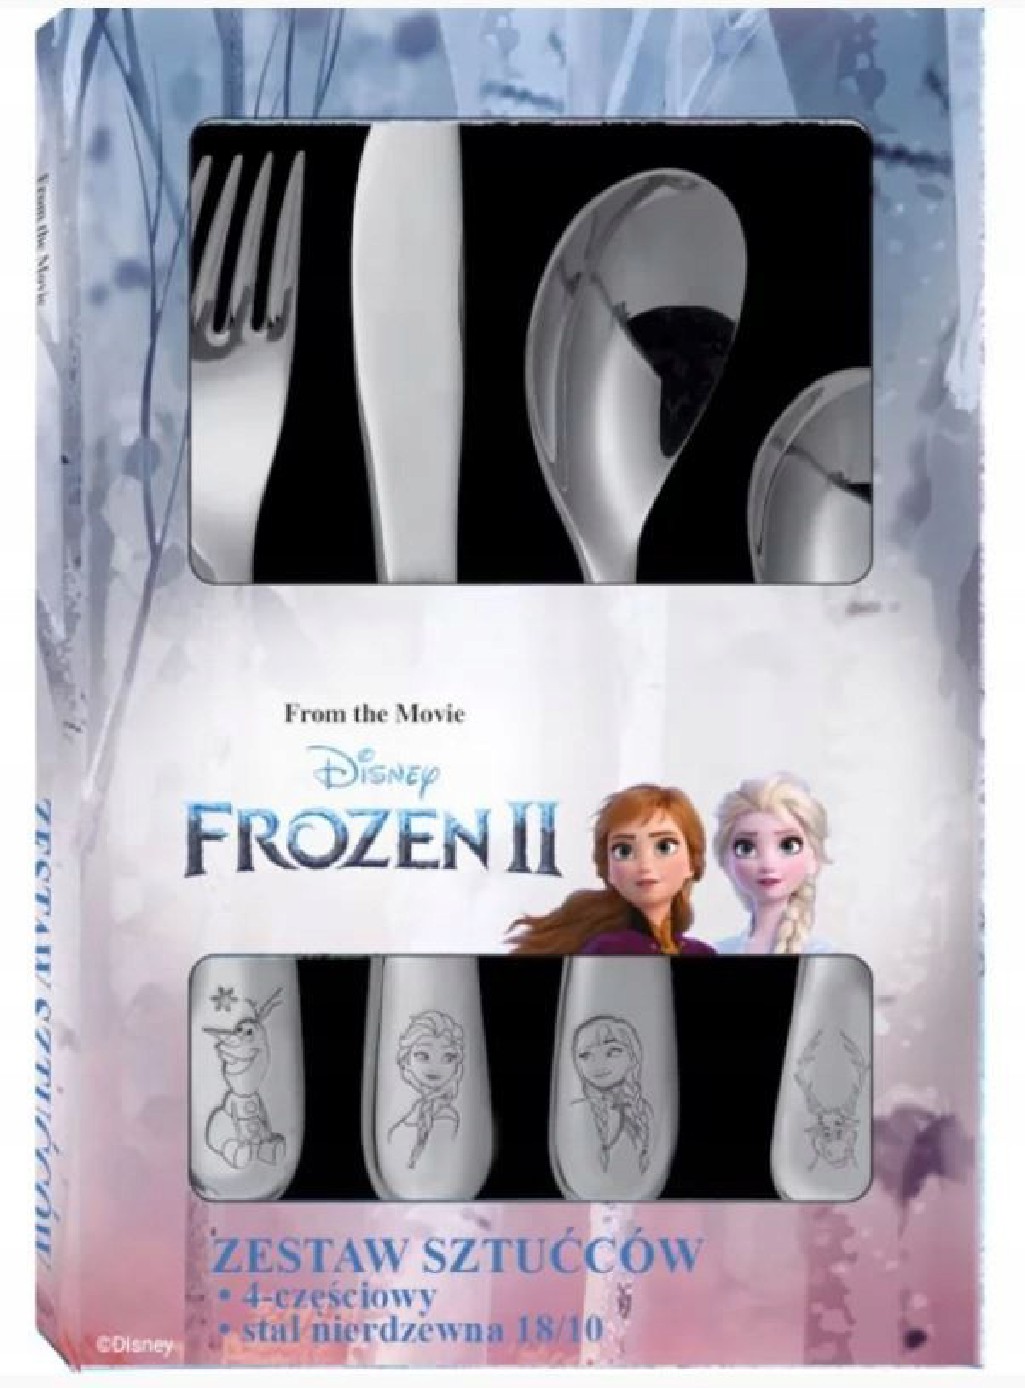 Disney Frozen II komplet 4 sztućców 